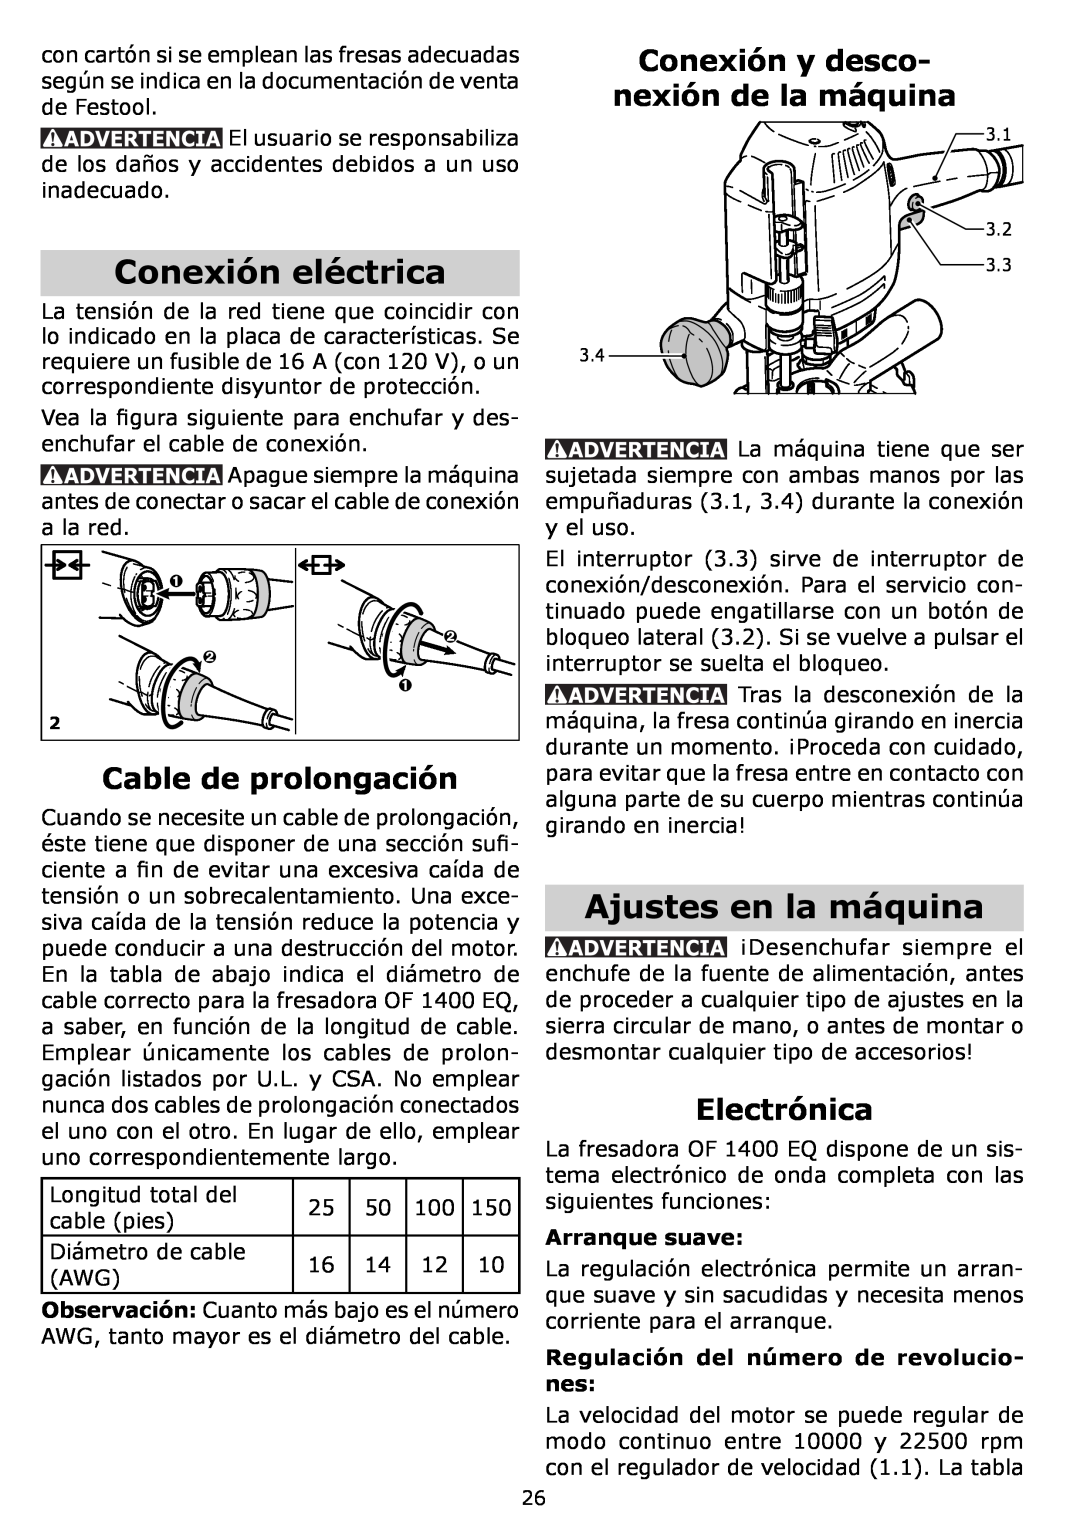 Festool OF 1400 EQ Conexión eléctrica, Ajustes en la máquina, Cable de prolongación, Conexión y desco, Electrónica 